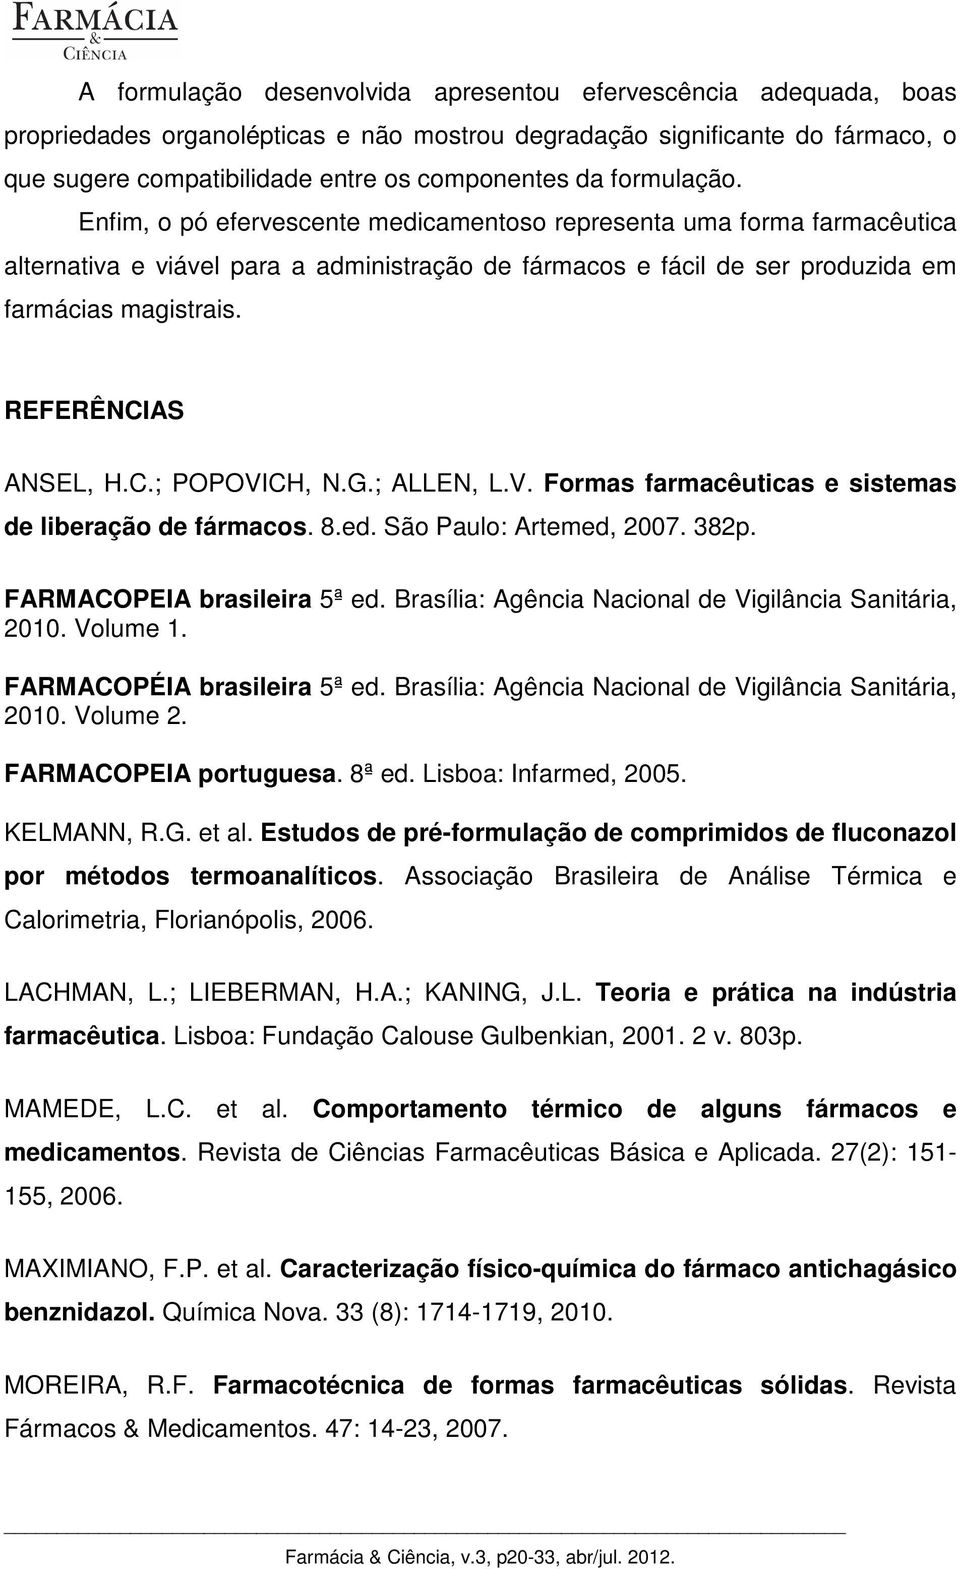 REFERÊNCIAS ANSEL, H.C.; POPOVICH, N.G.; ALLEN, L.V. Formas farmacêuticas e sistemas de liberação de fármacos. 8.ed. São Paulo: Artemed, 2007. 382p. FARMACOPEIA brasileira 5ª ed.